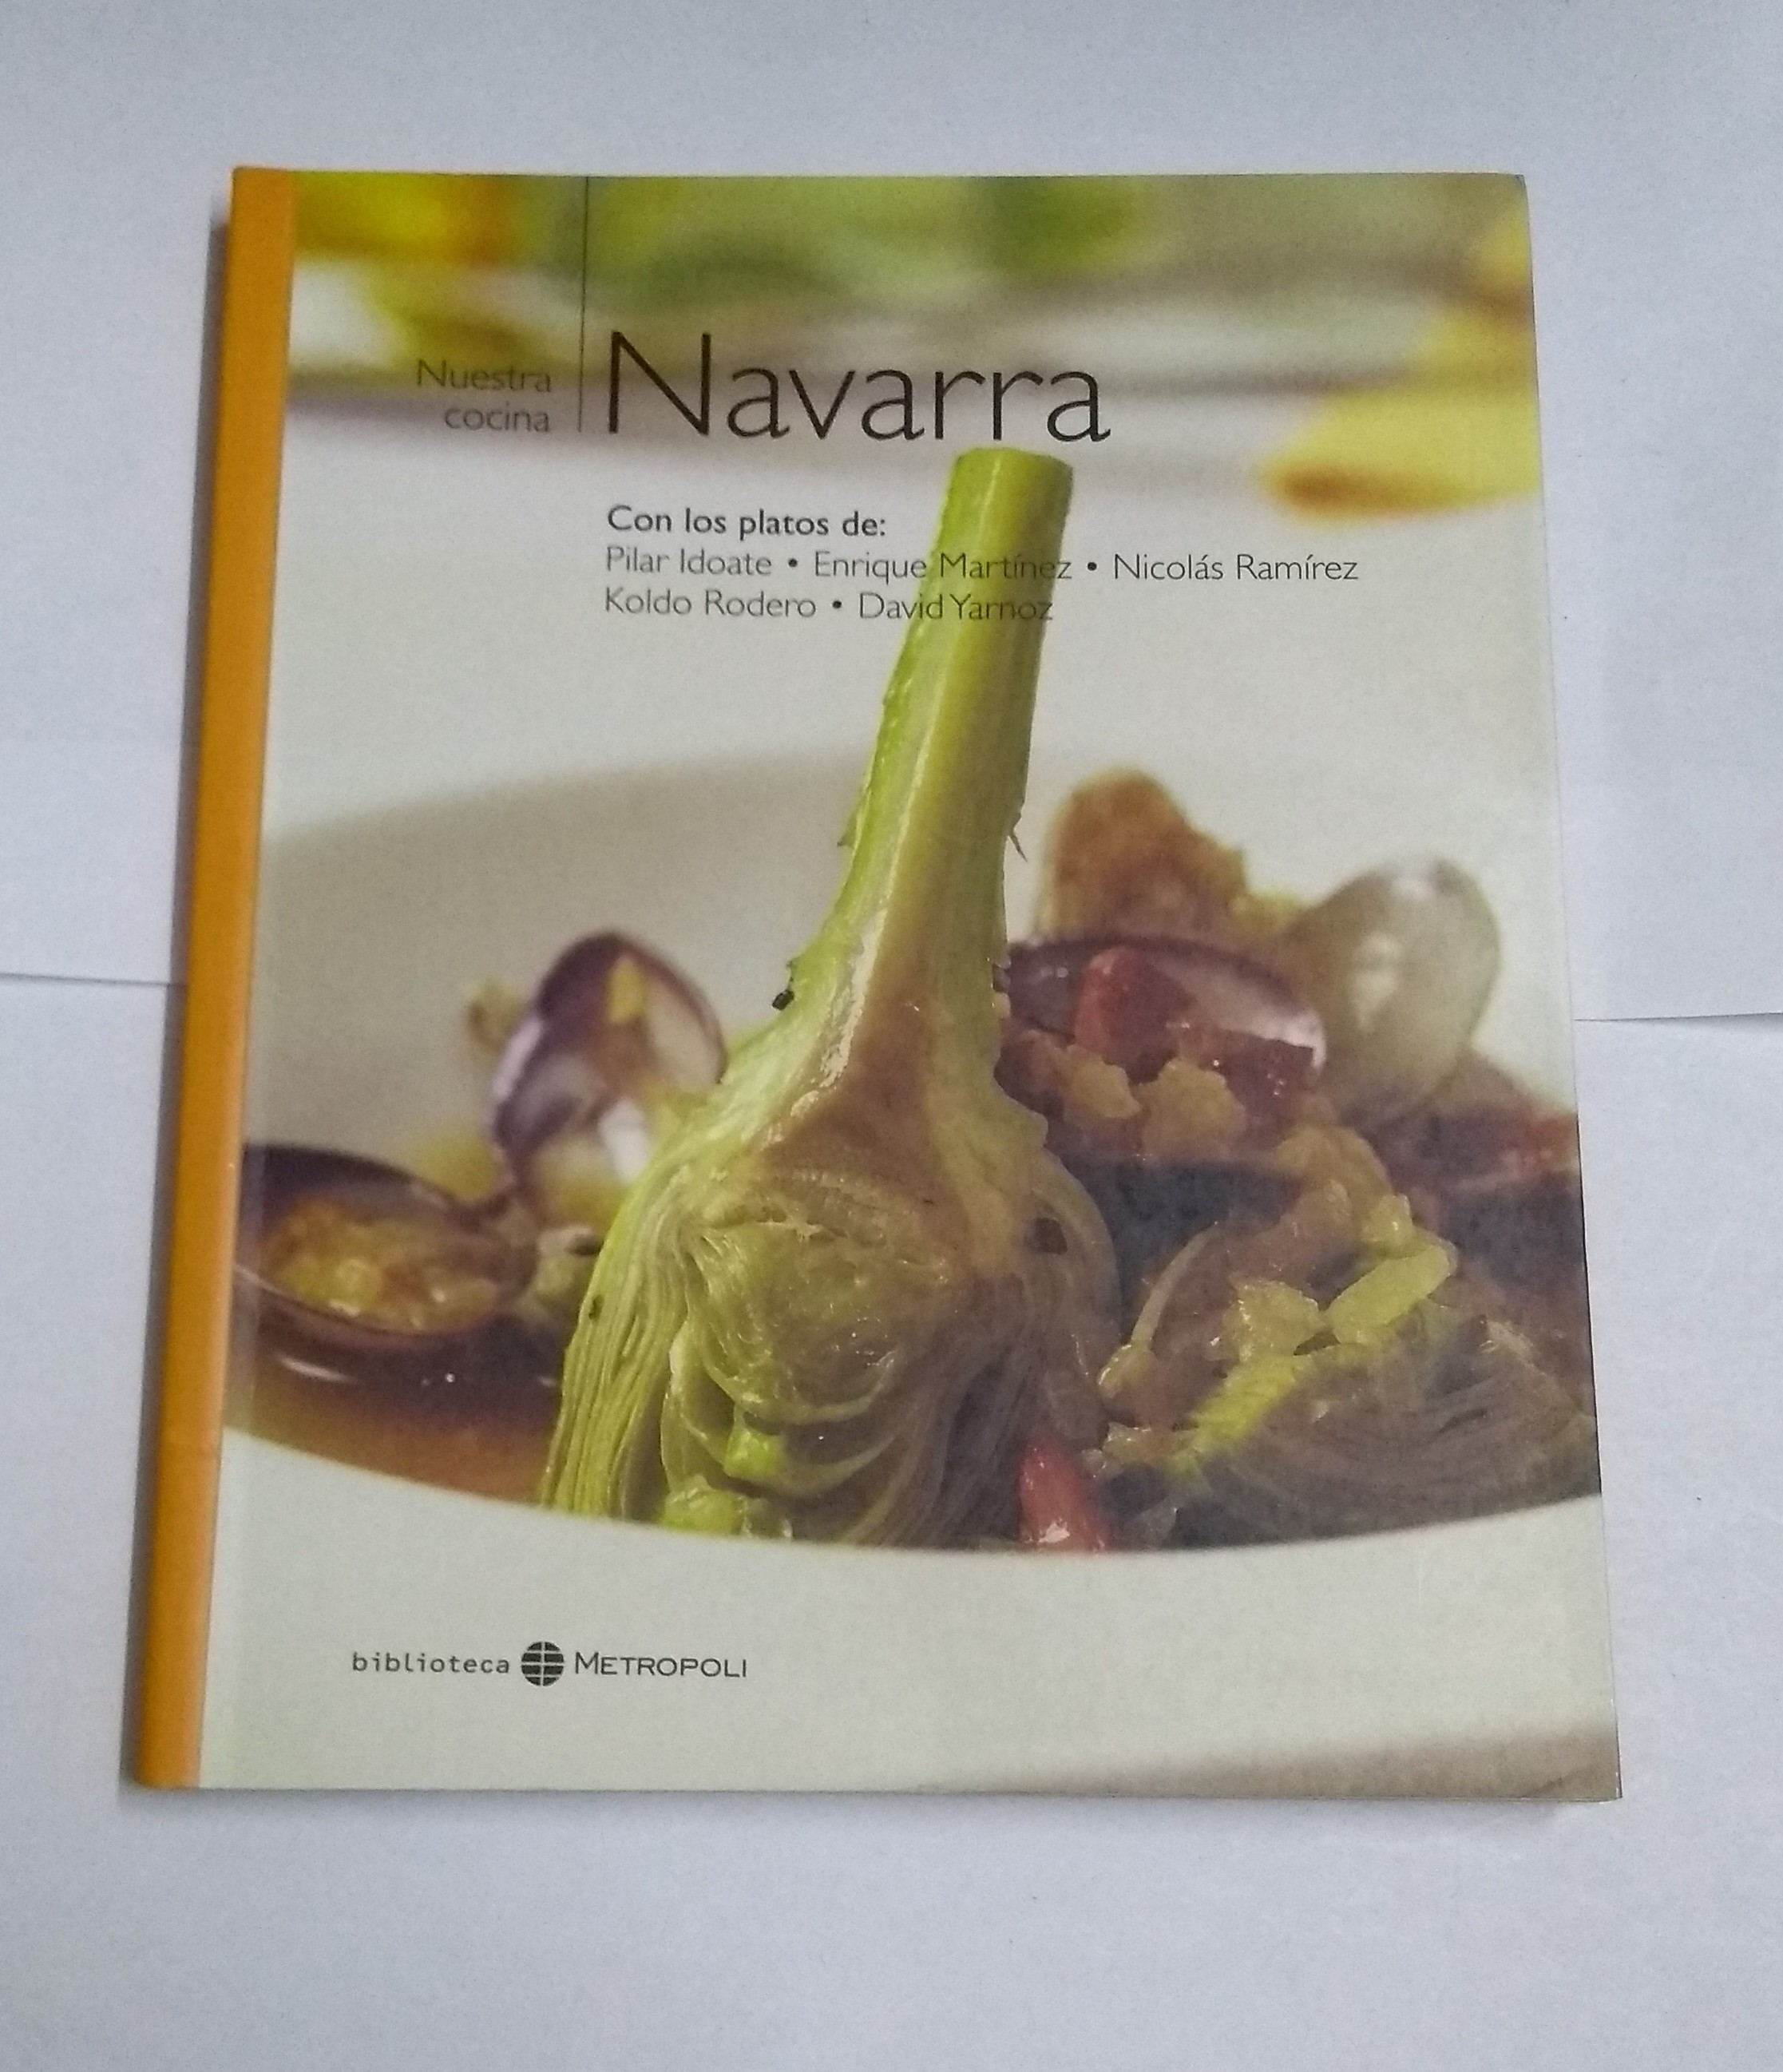 Nuestra cocina: Navarra